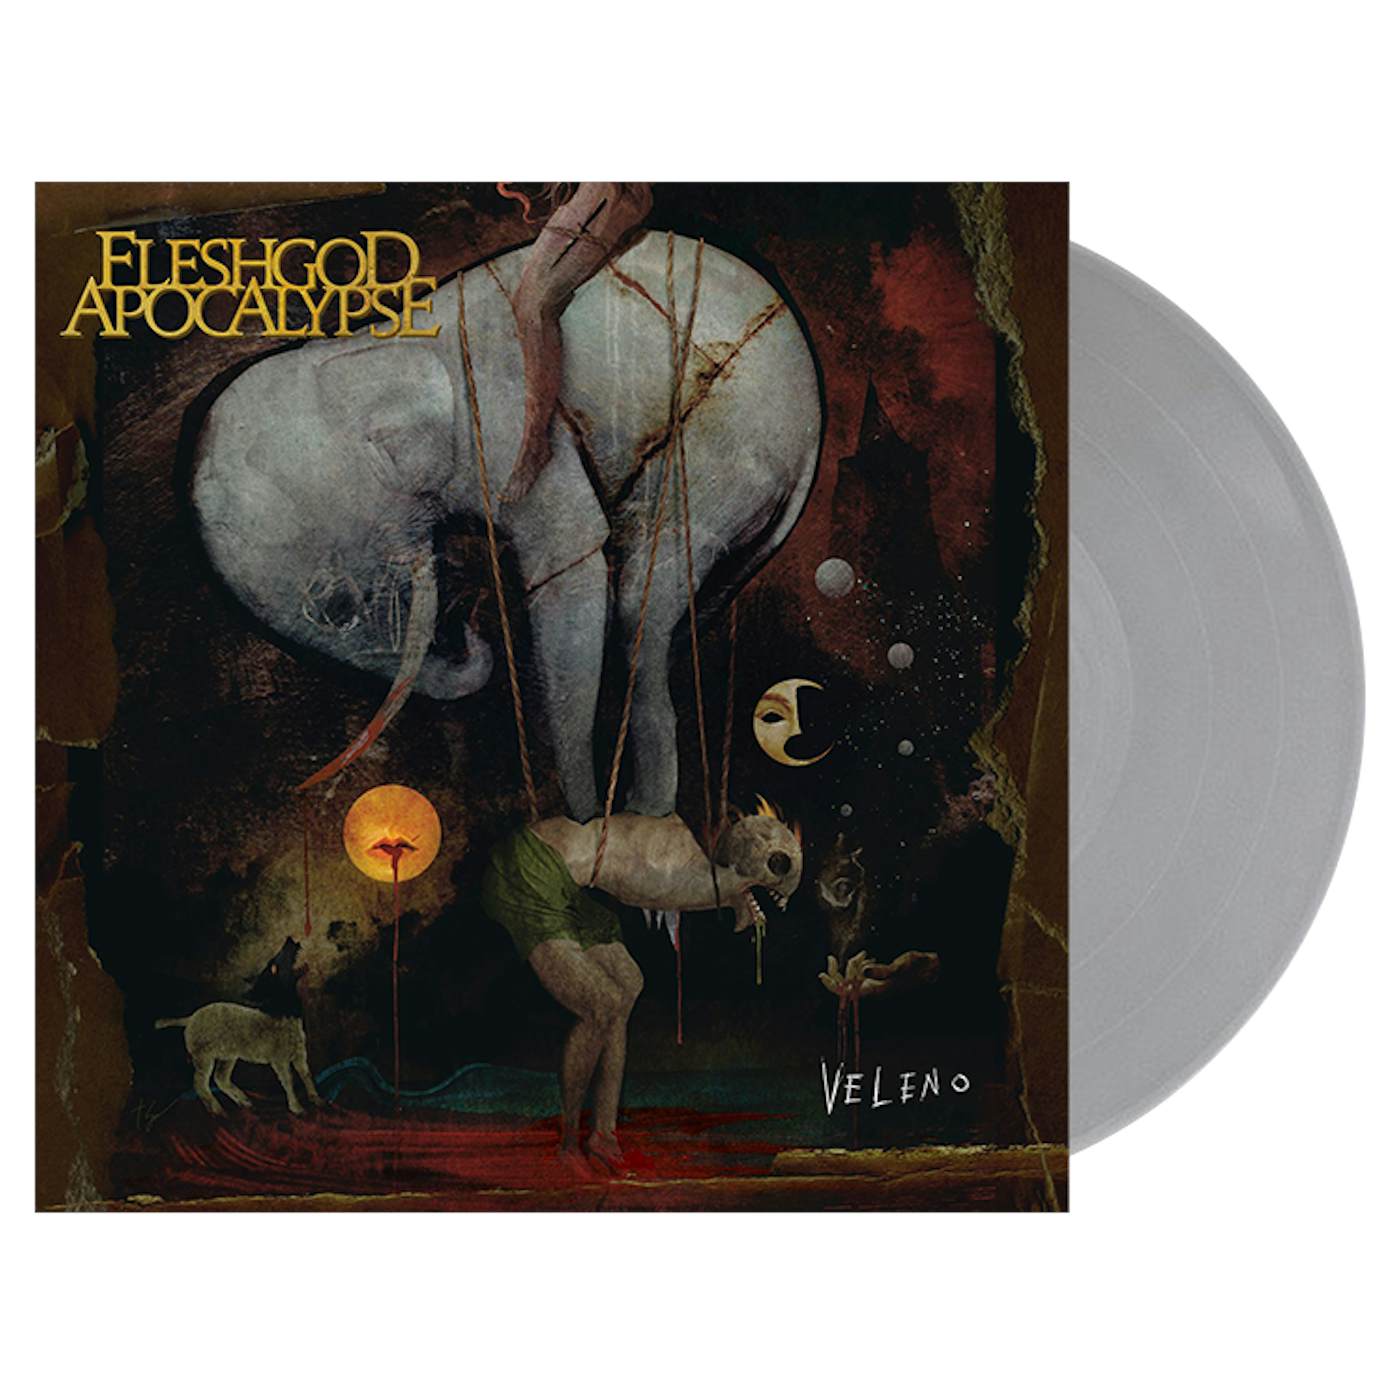 FLESHGOD APOCALYPSE - 'Veleno' 2xLP (Vinyl)